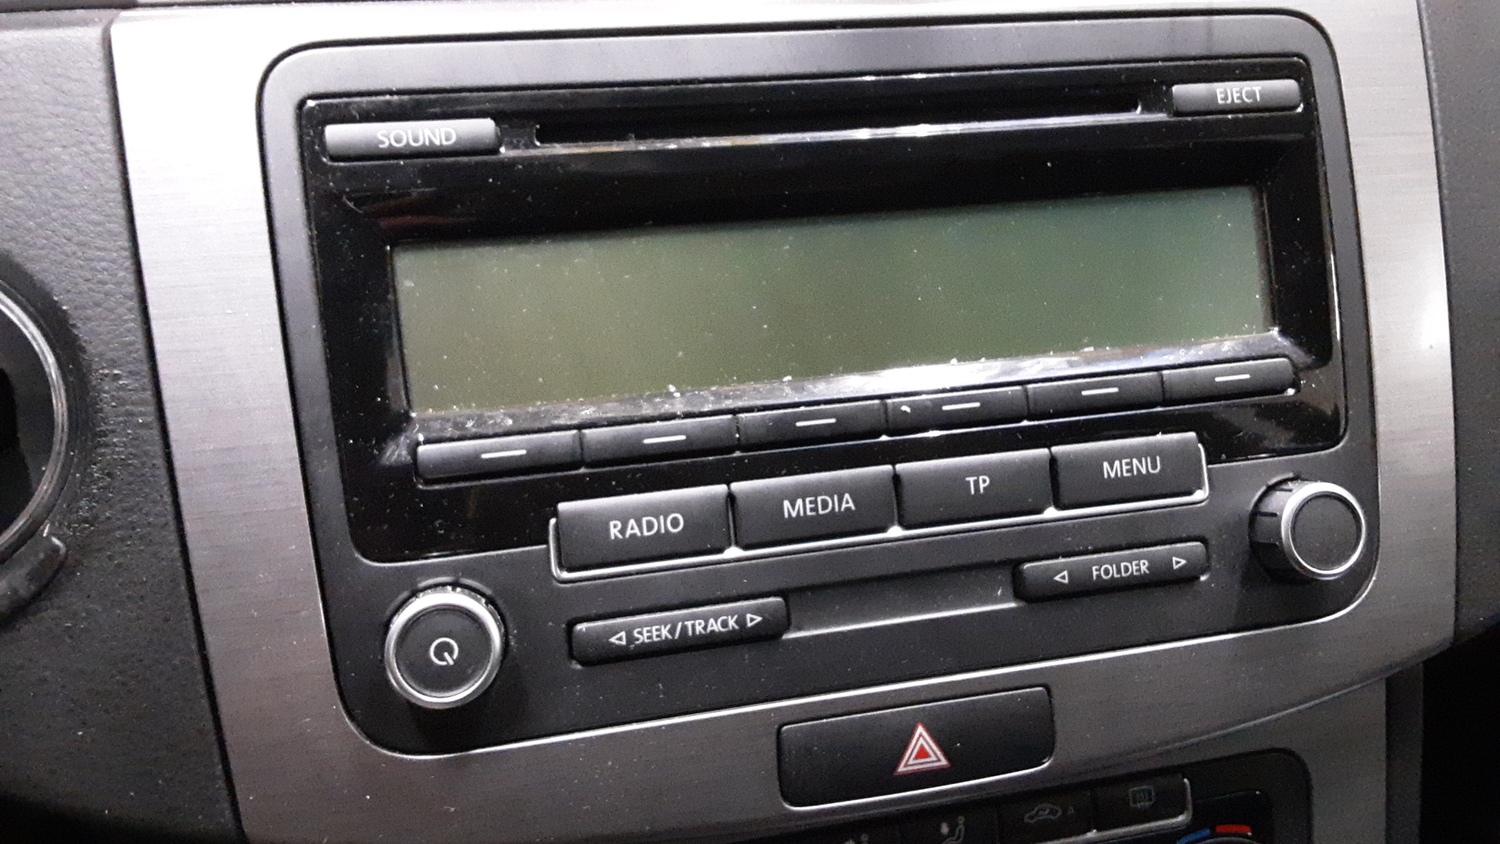 ORIGINAL Audio VW PASSAT (362)  2011 - Picture 1 of 1